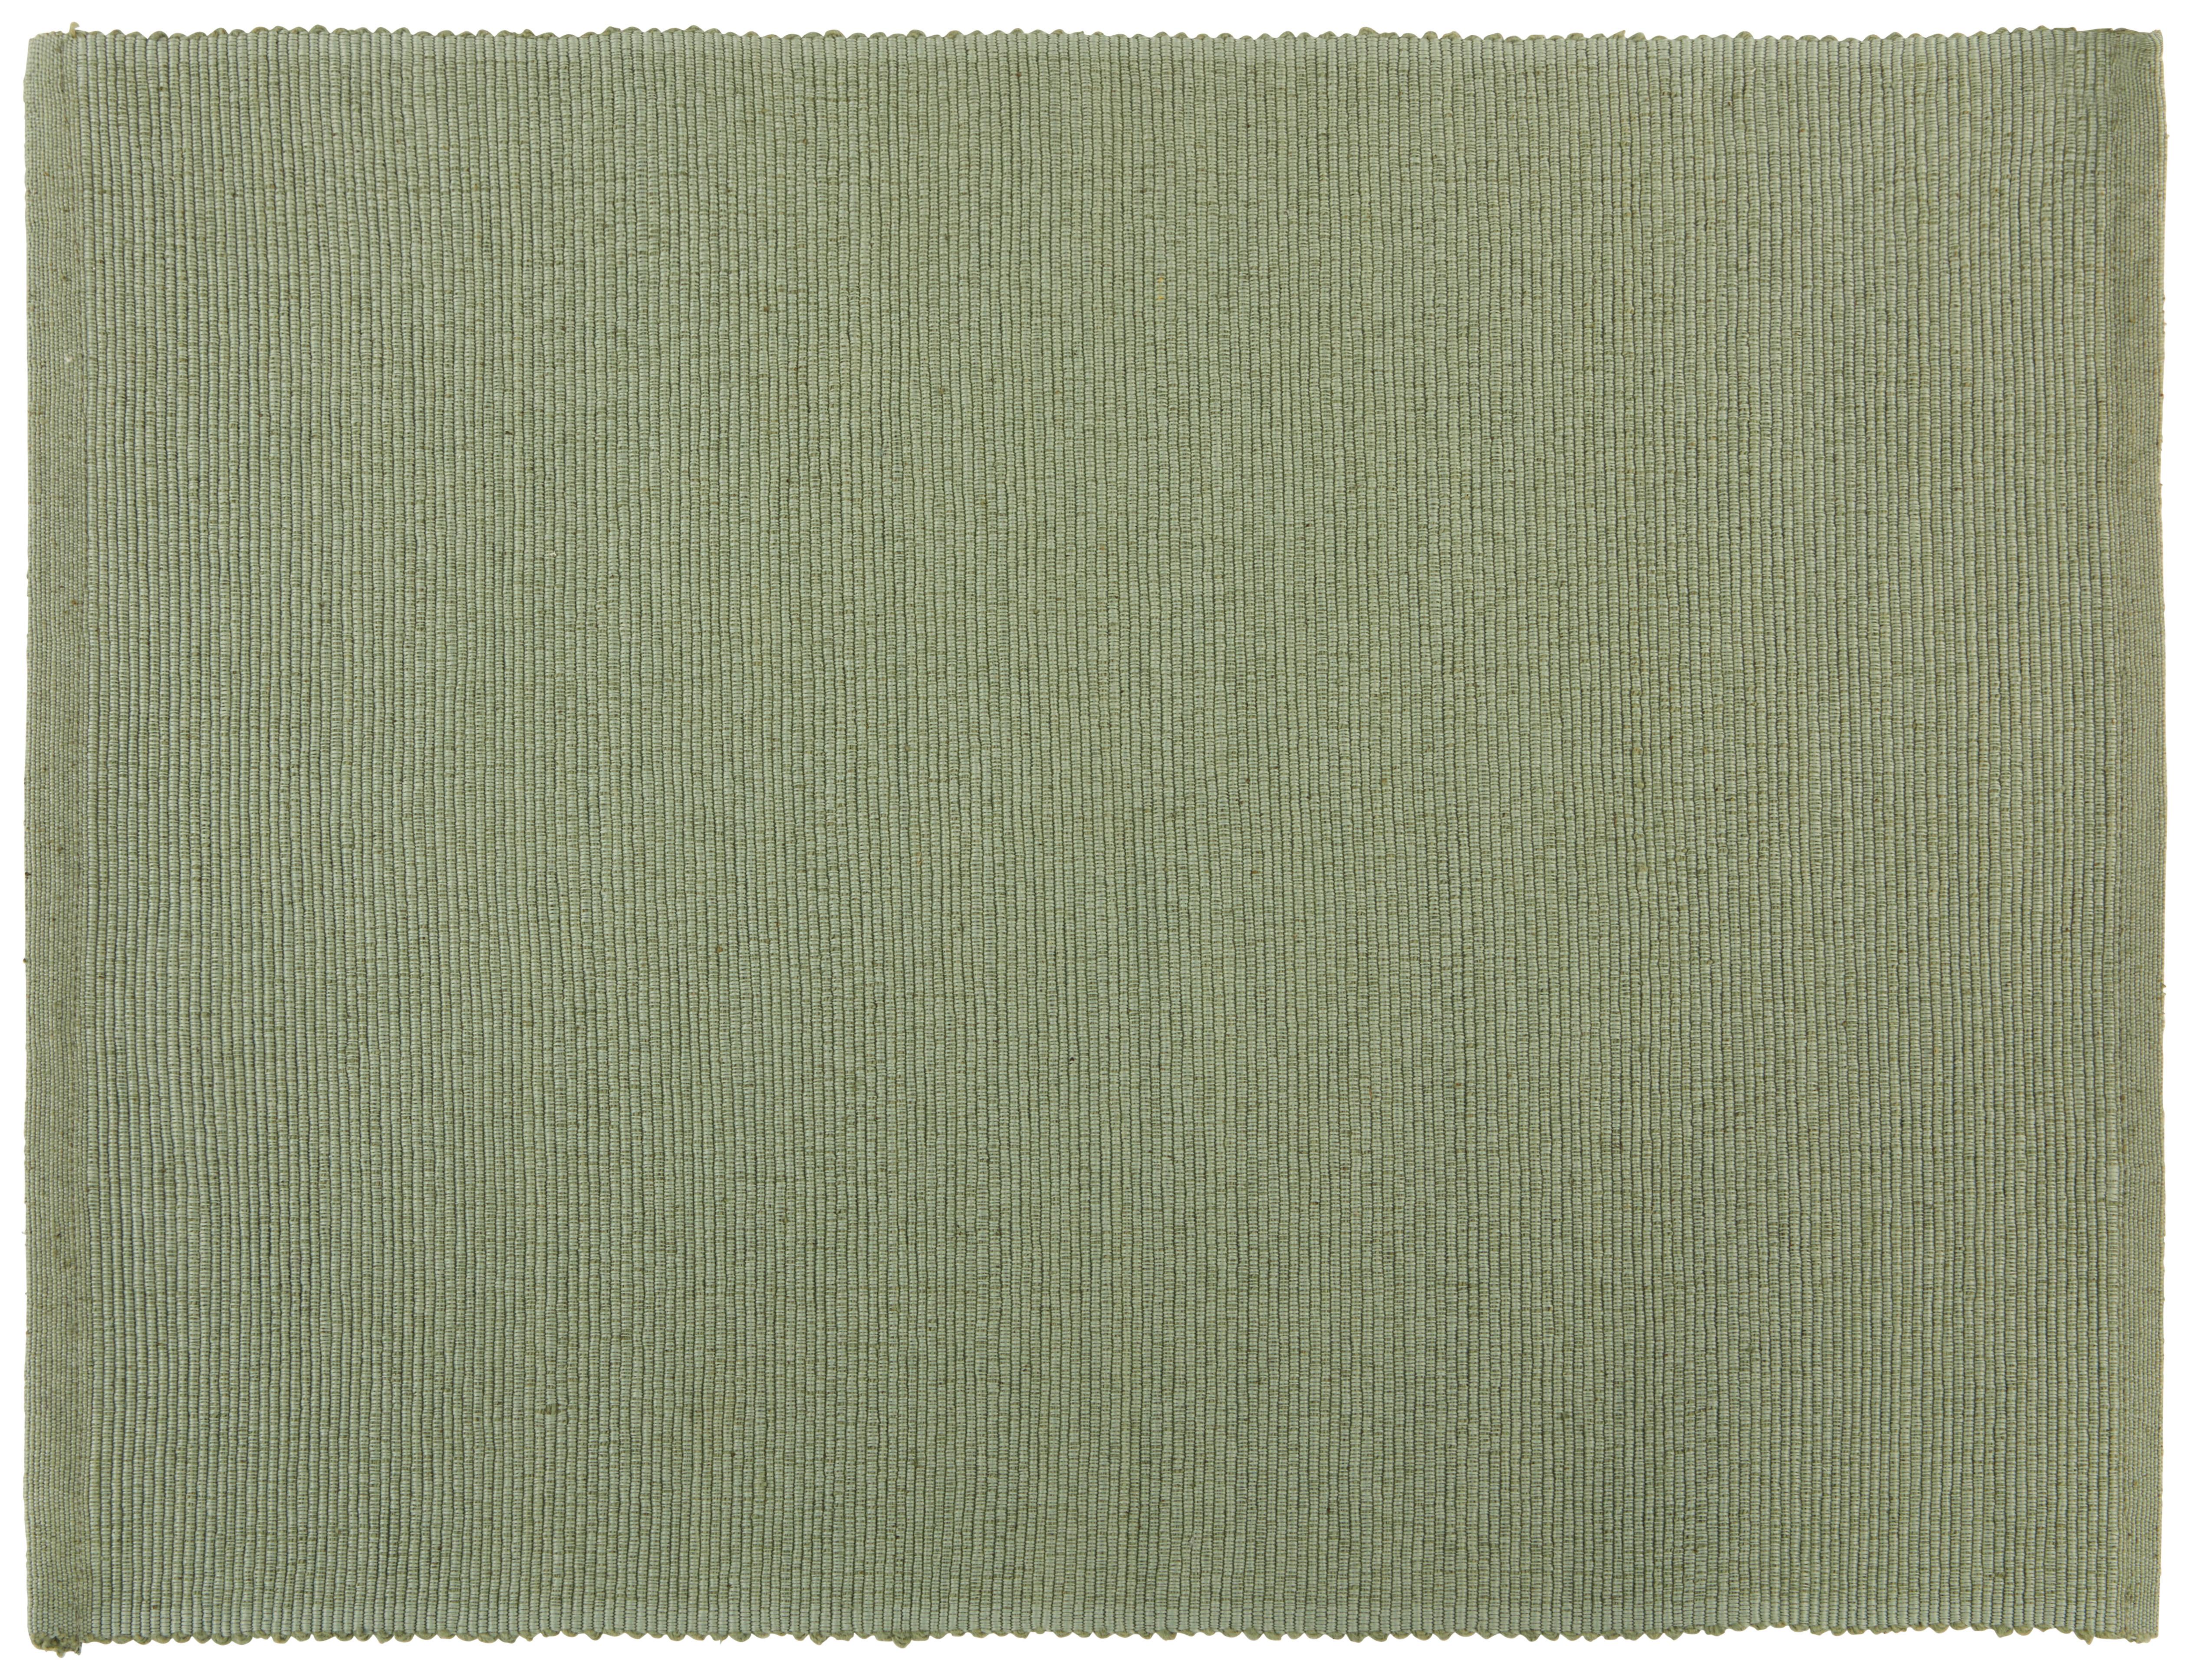 Prostírání Maren, 33/45cm, Zelená - šalvějově zelená, textil (33/45cm) - Based